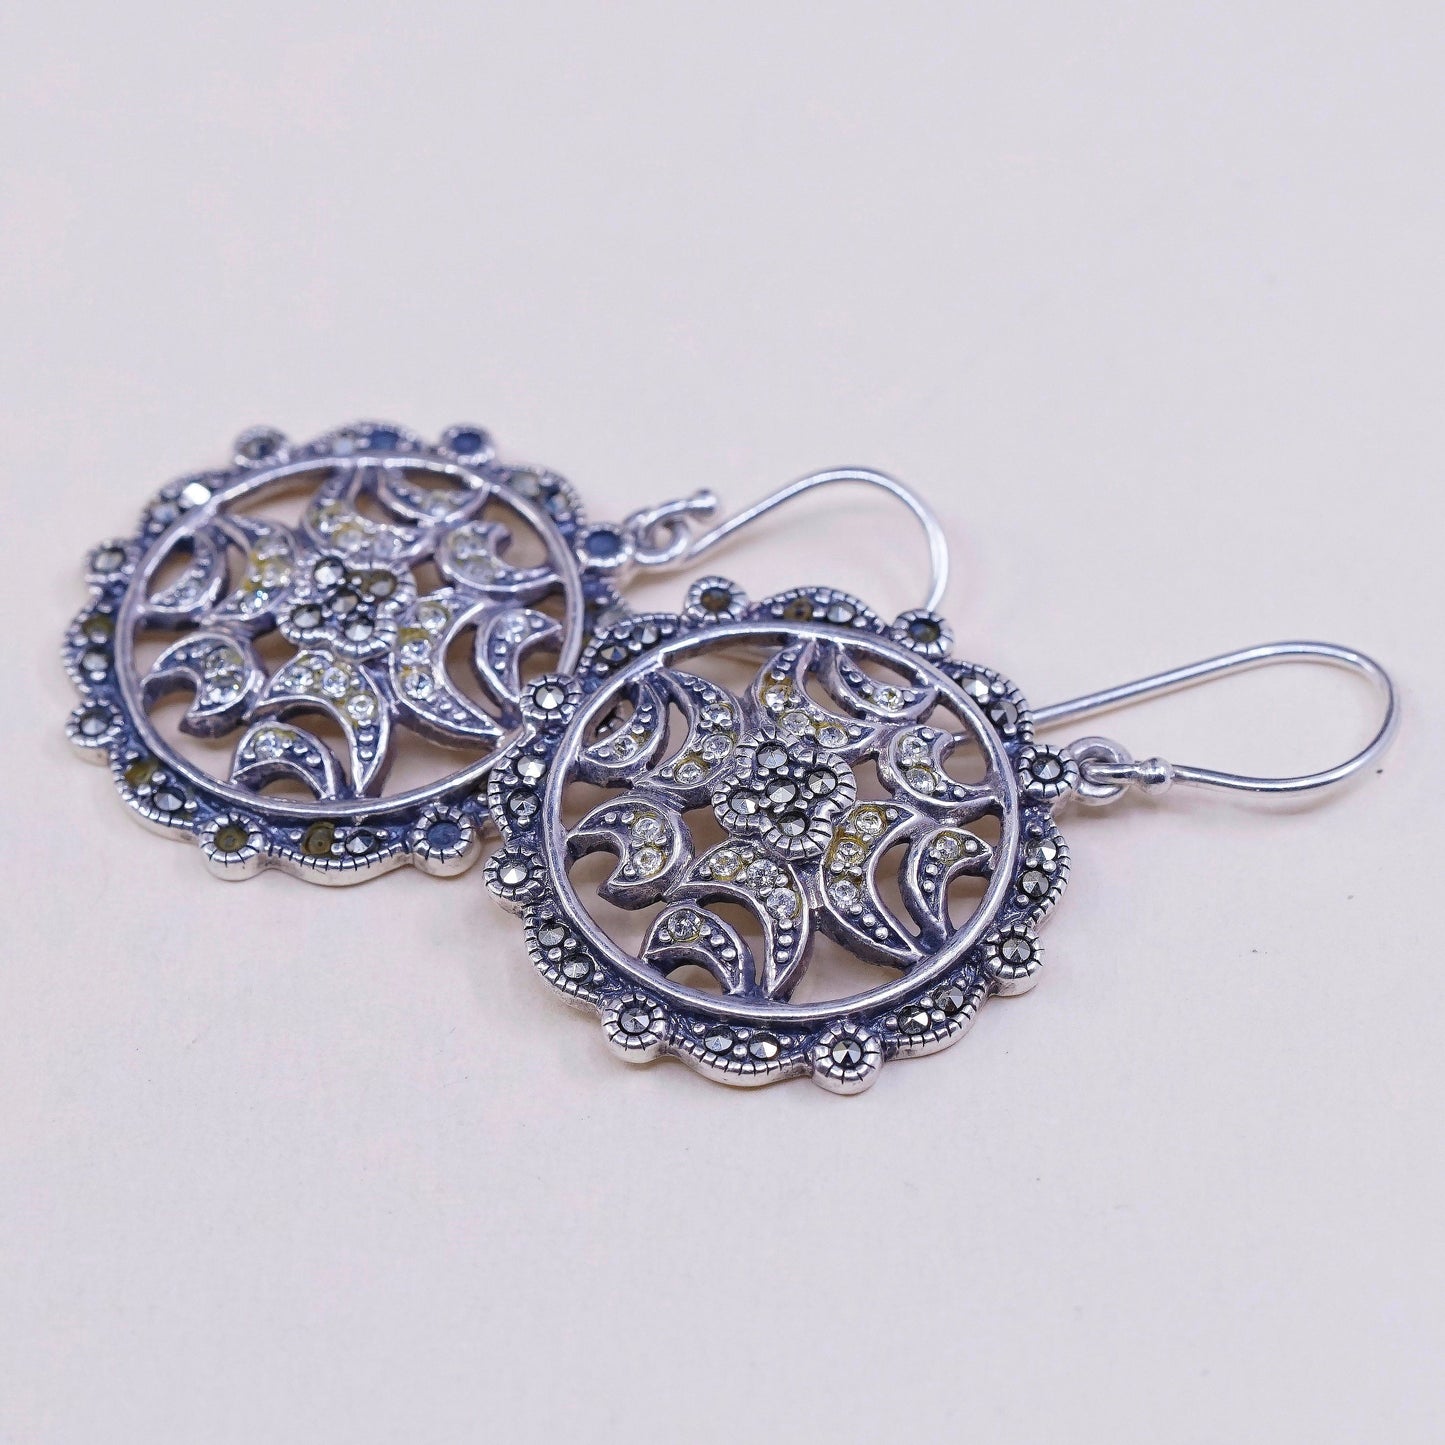 VTG sterling silver handmade earrings, 925 w/ cluster Cz n Marcasite